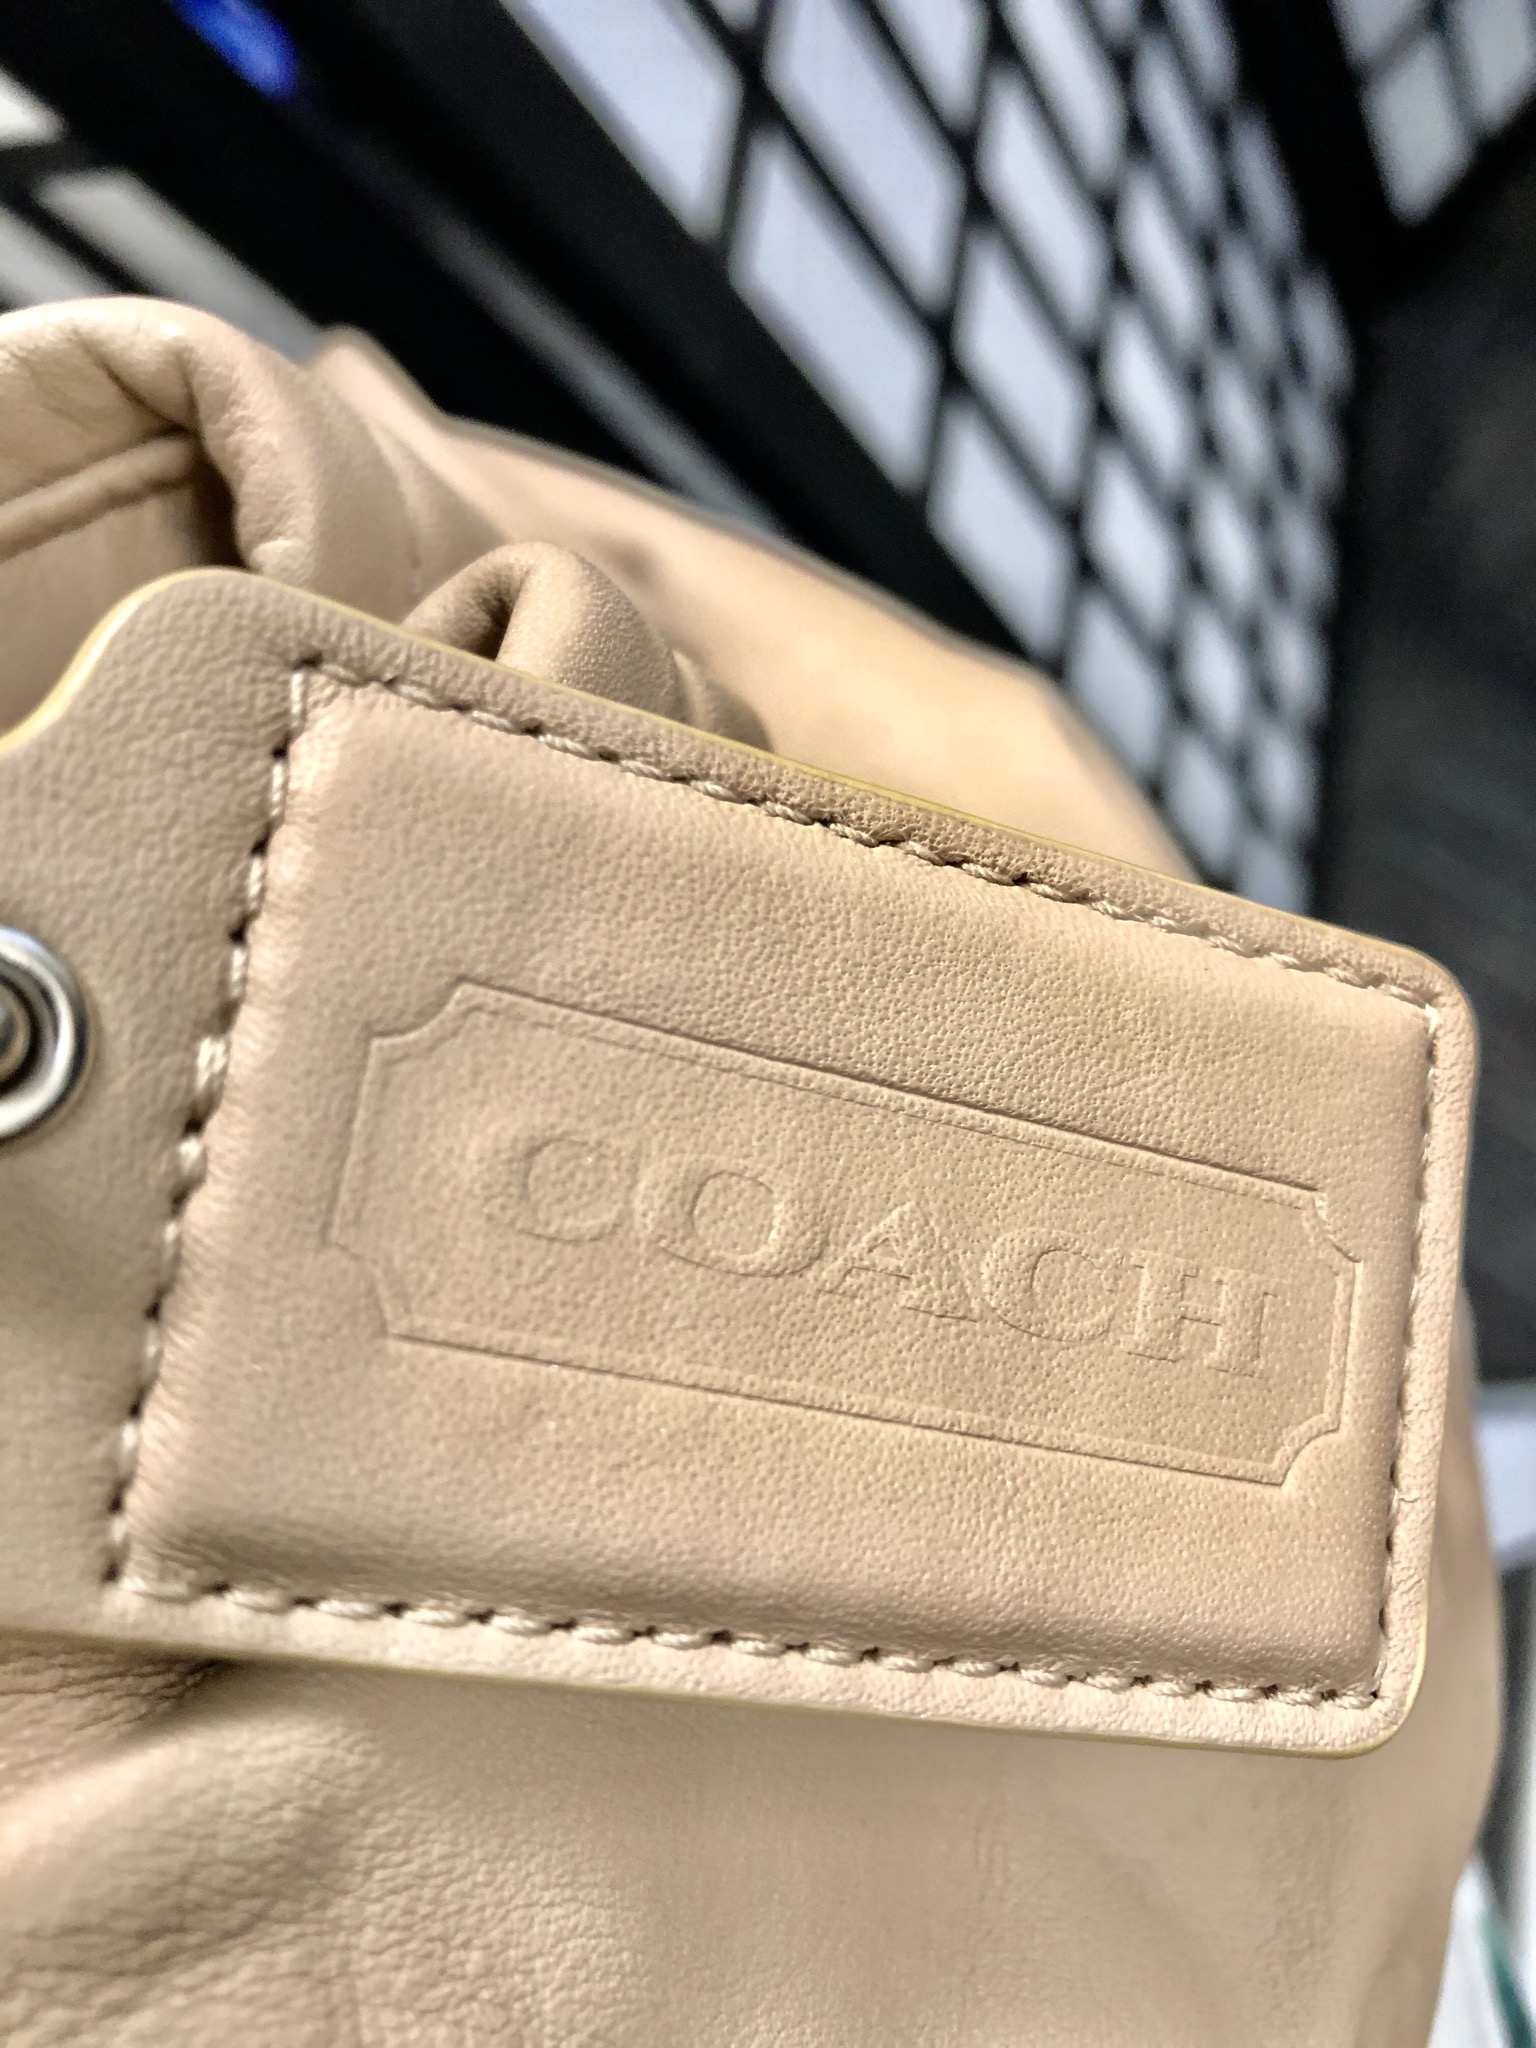 Original coach bag lightly used